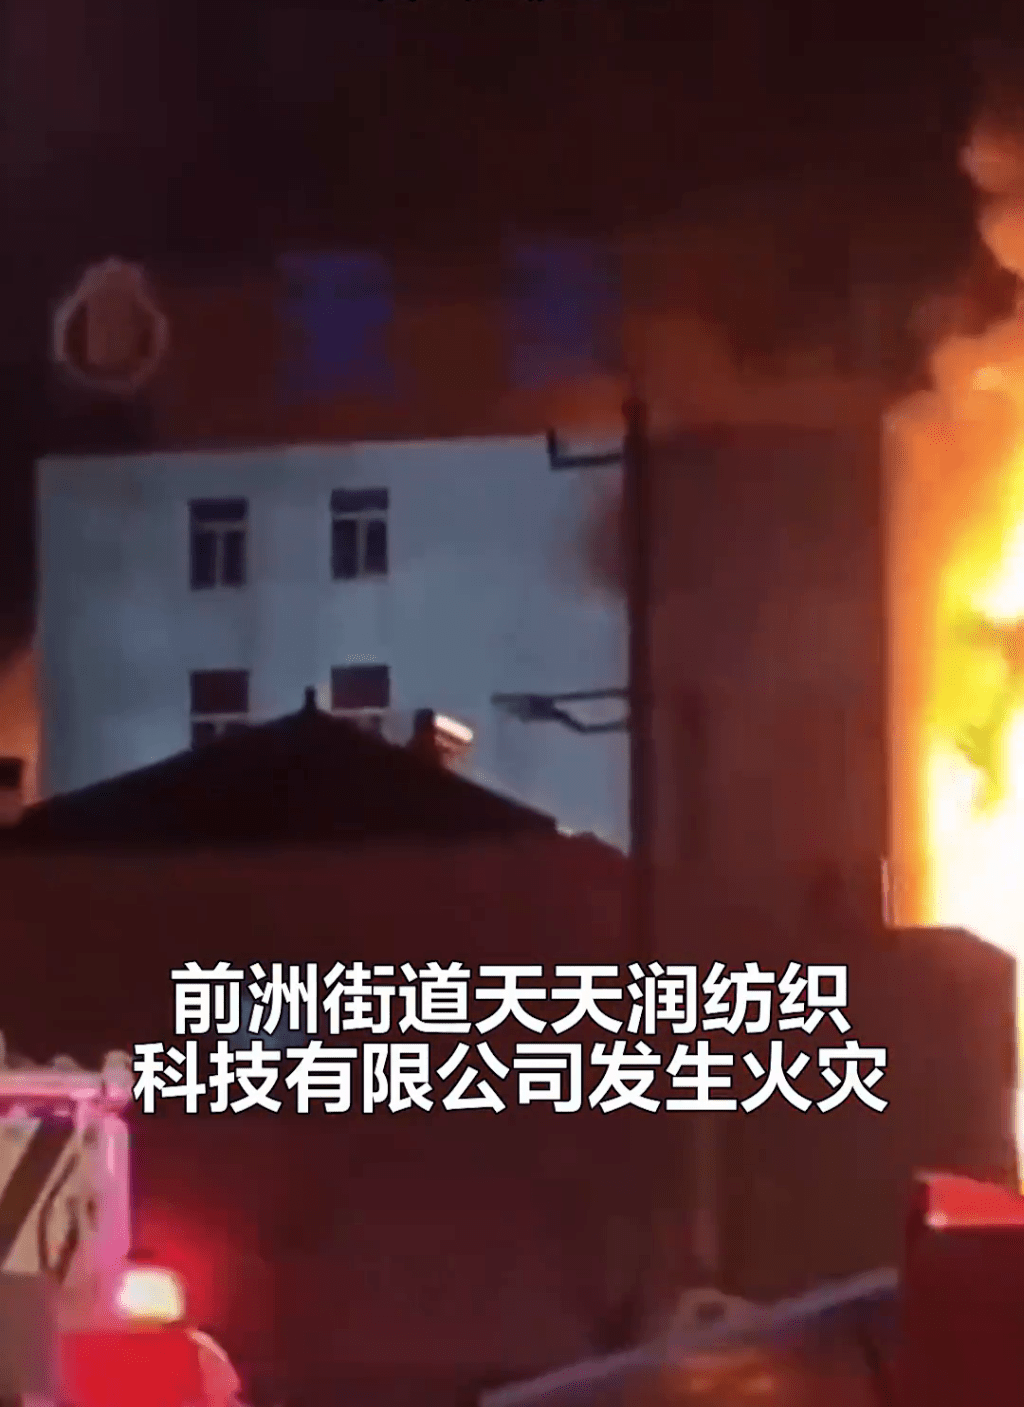 江蘇無錫市惠山區前洲街道天天潤紡織科技有限公司發生一宗嚴重火災事故。